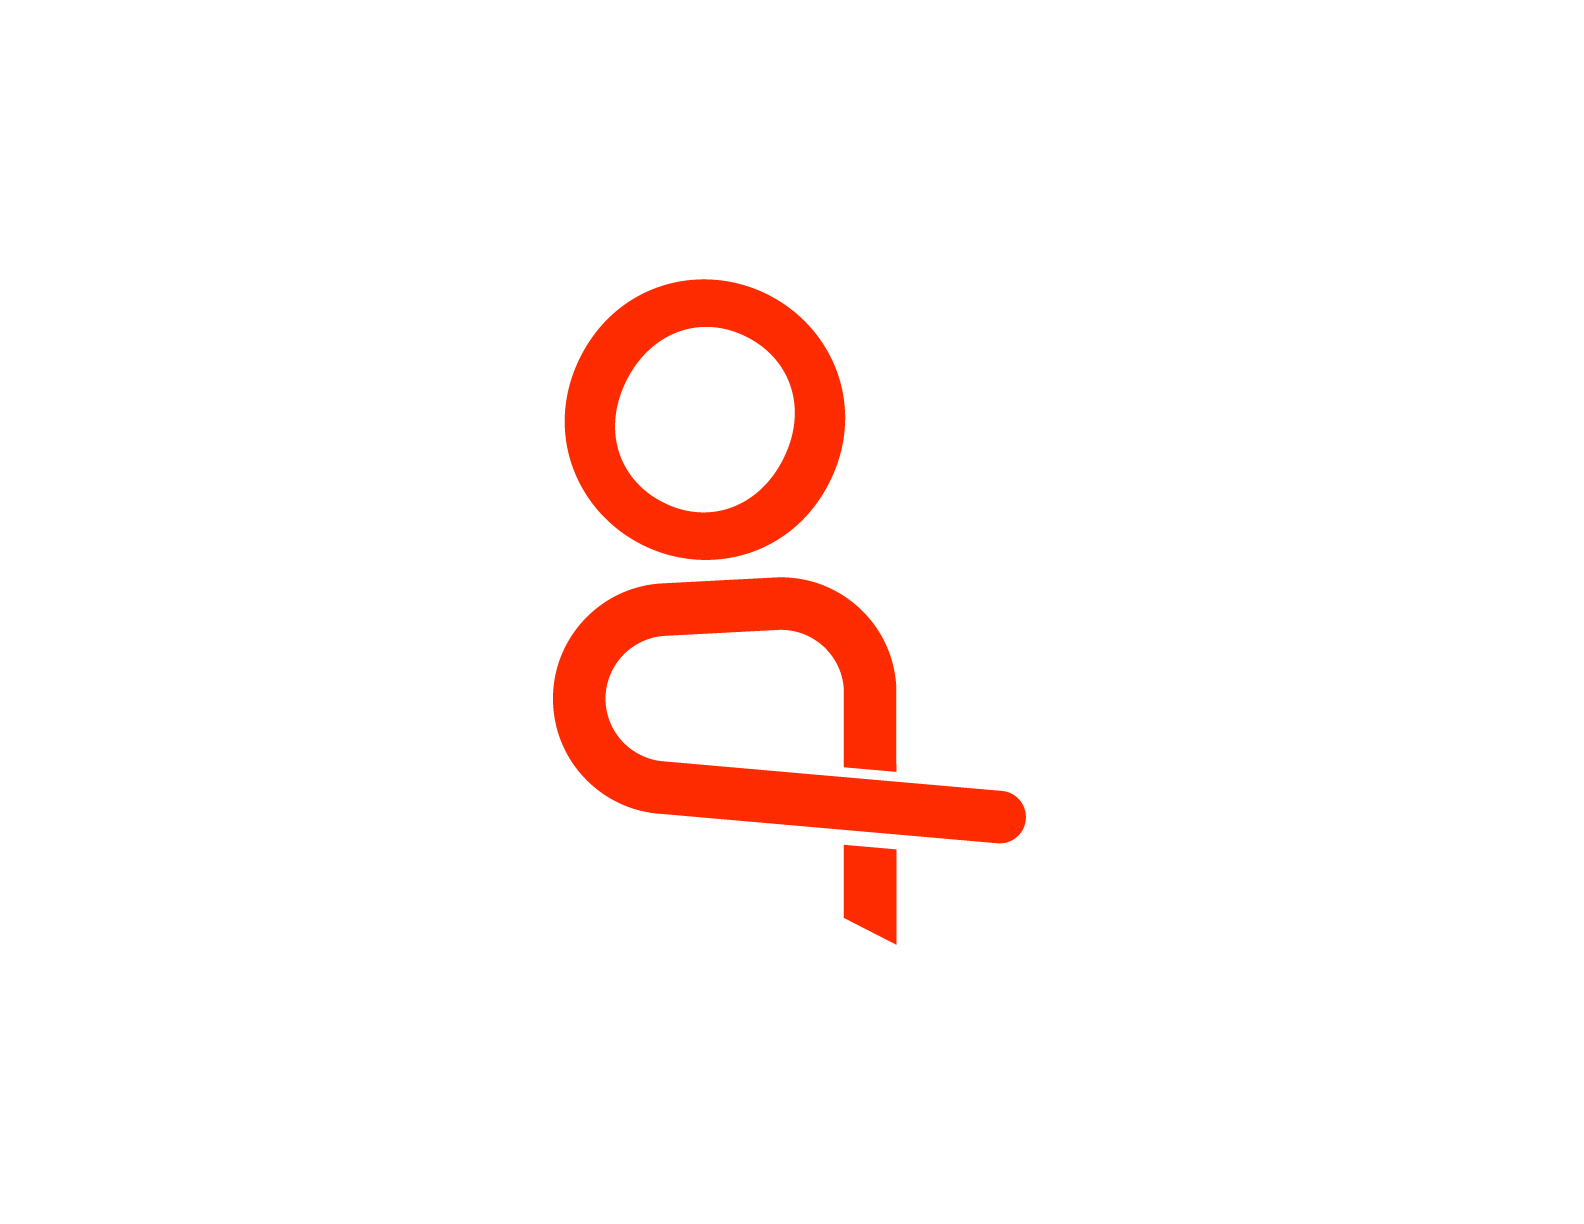 Dutch Reach Icon Master jpg, orange figure on white background.